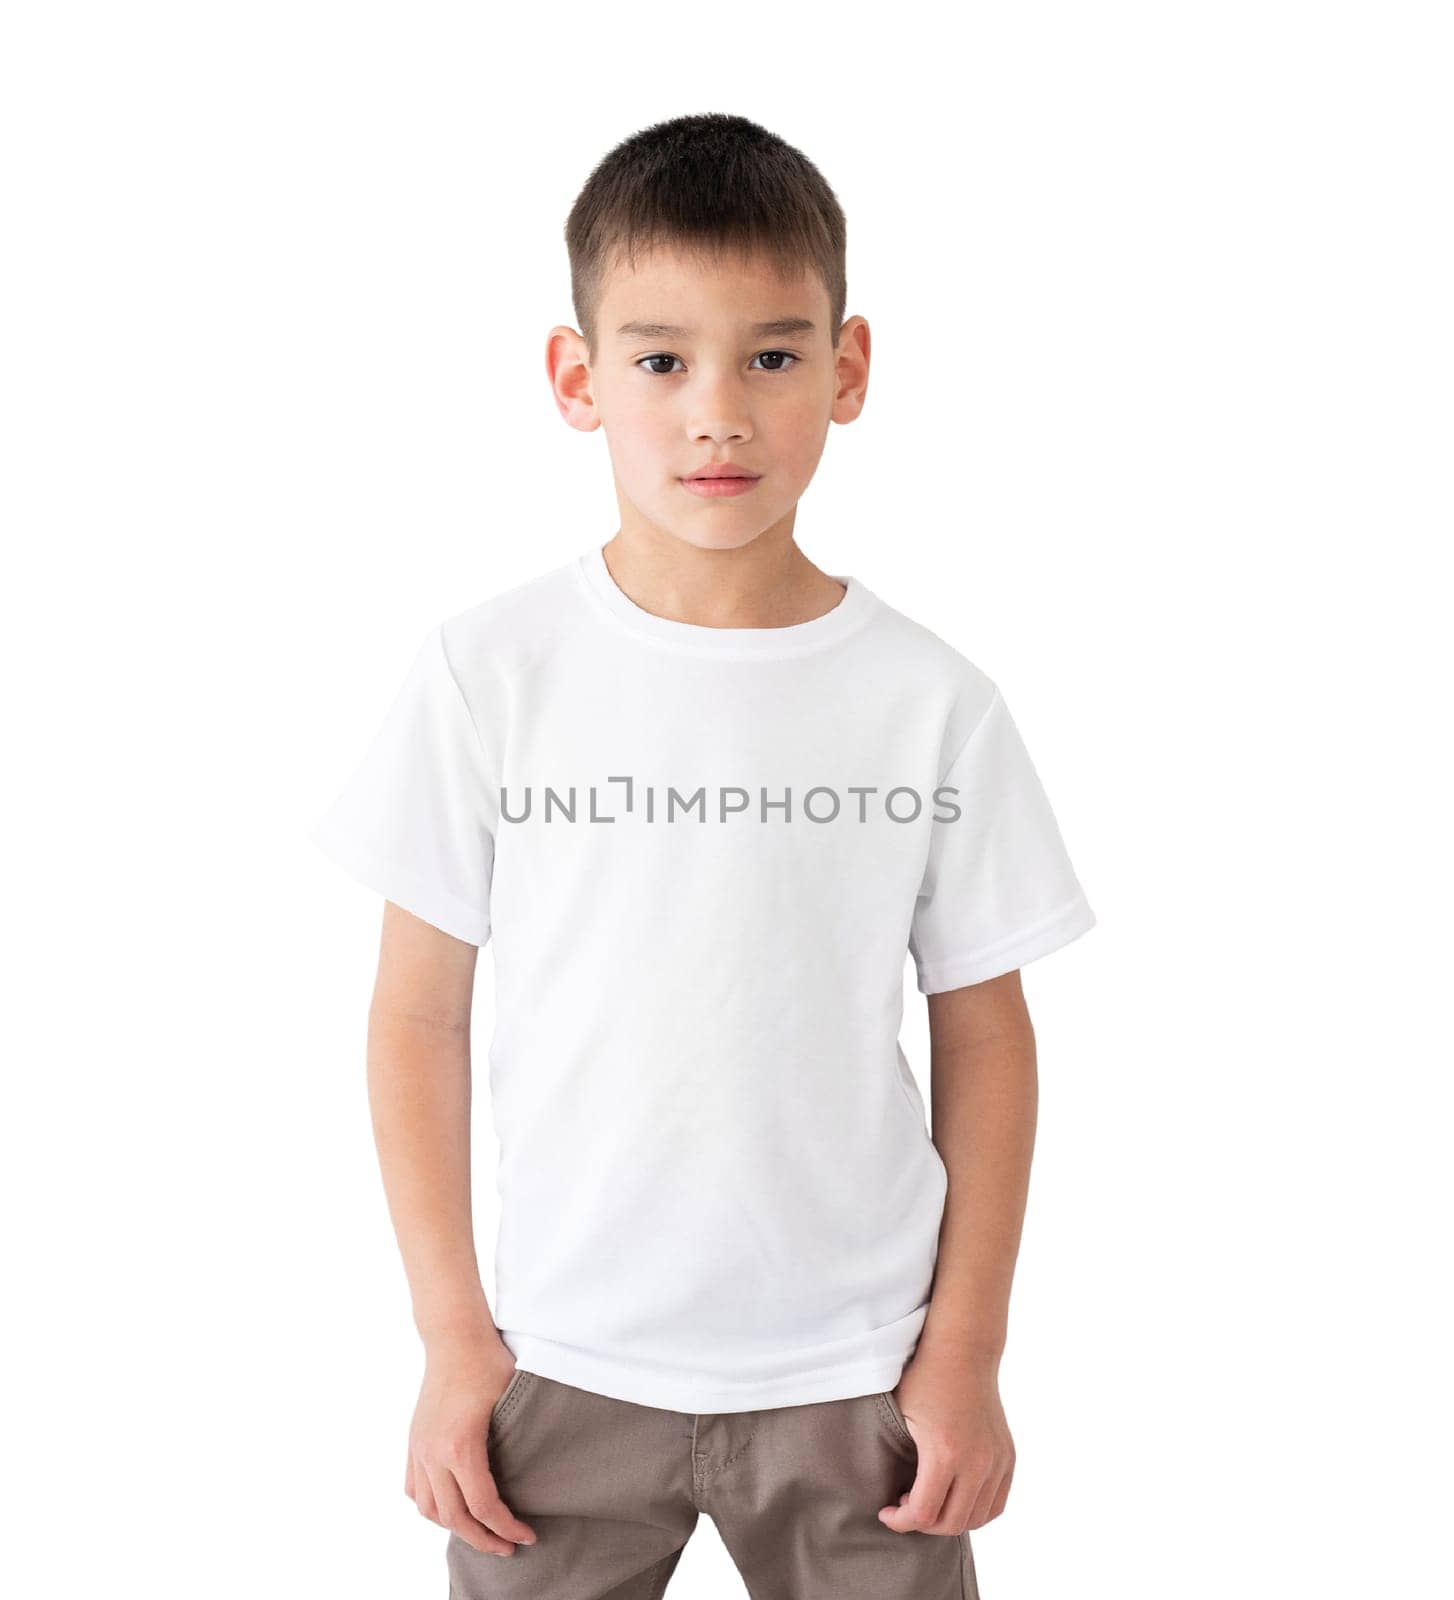 Cute little boy wearing blank t-shirt by GekaSkr